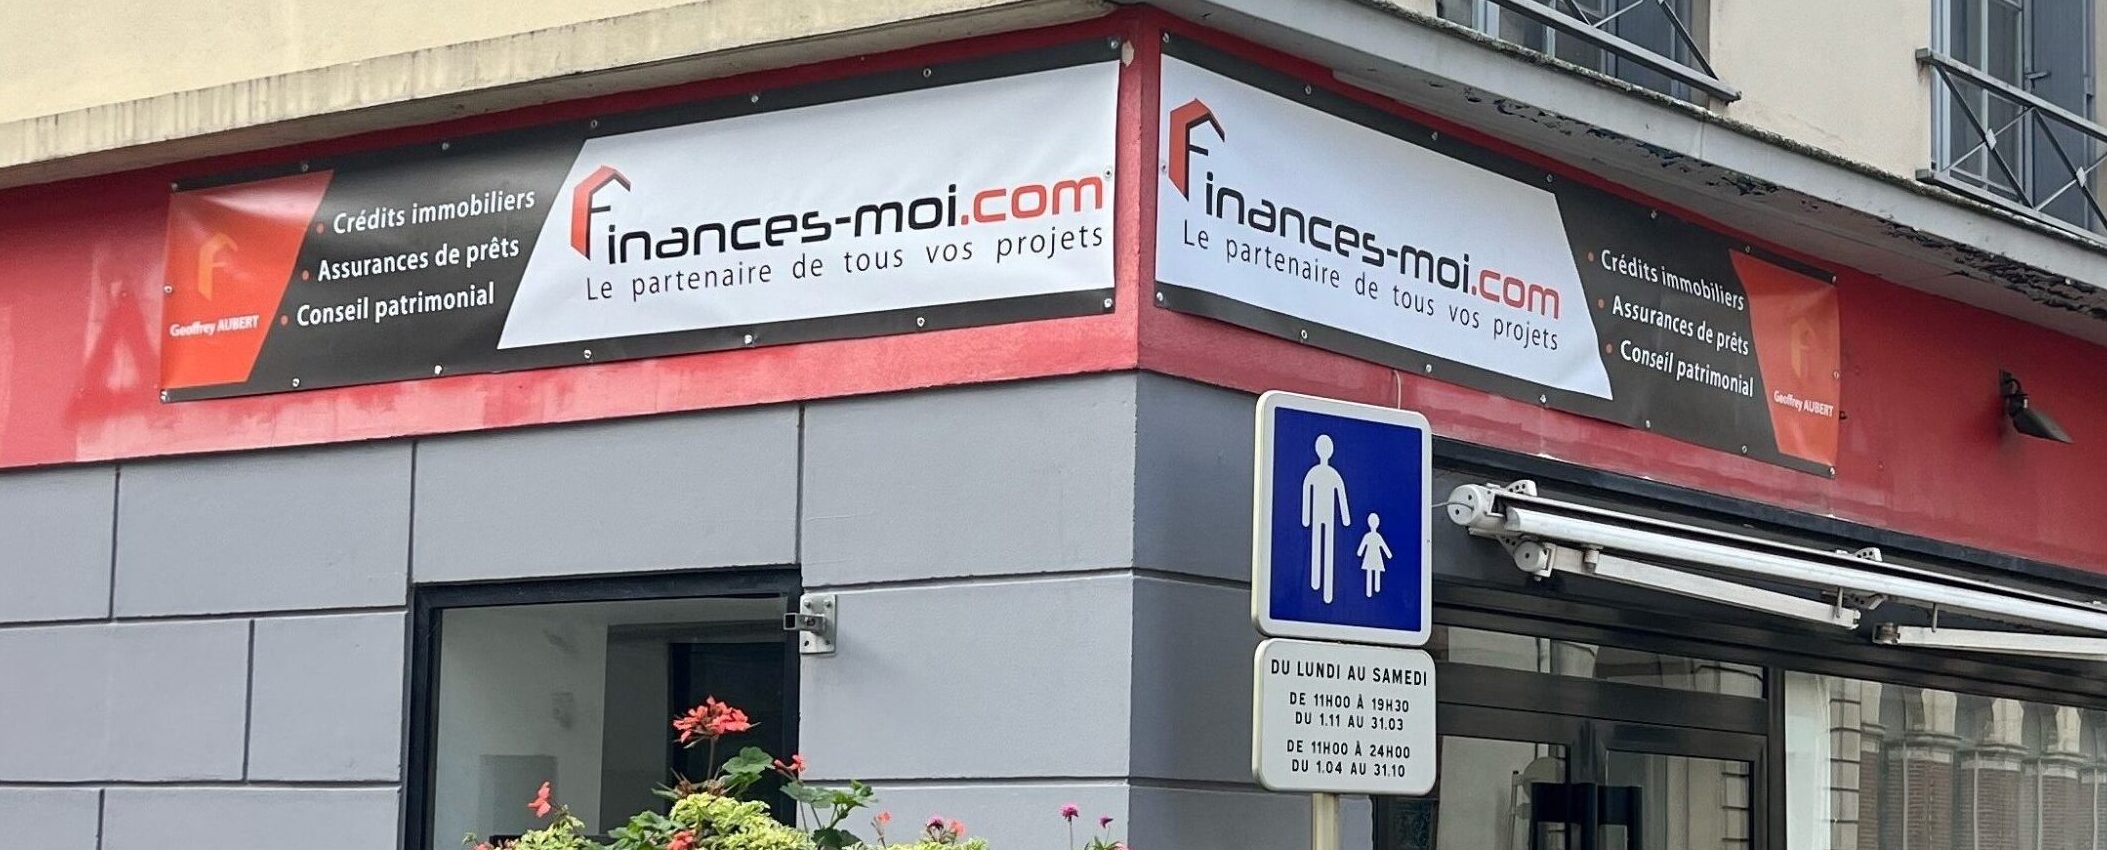 Agence finances-moi.com de Montargis : courtier en prêt immobilier